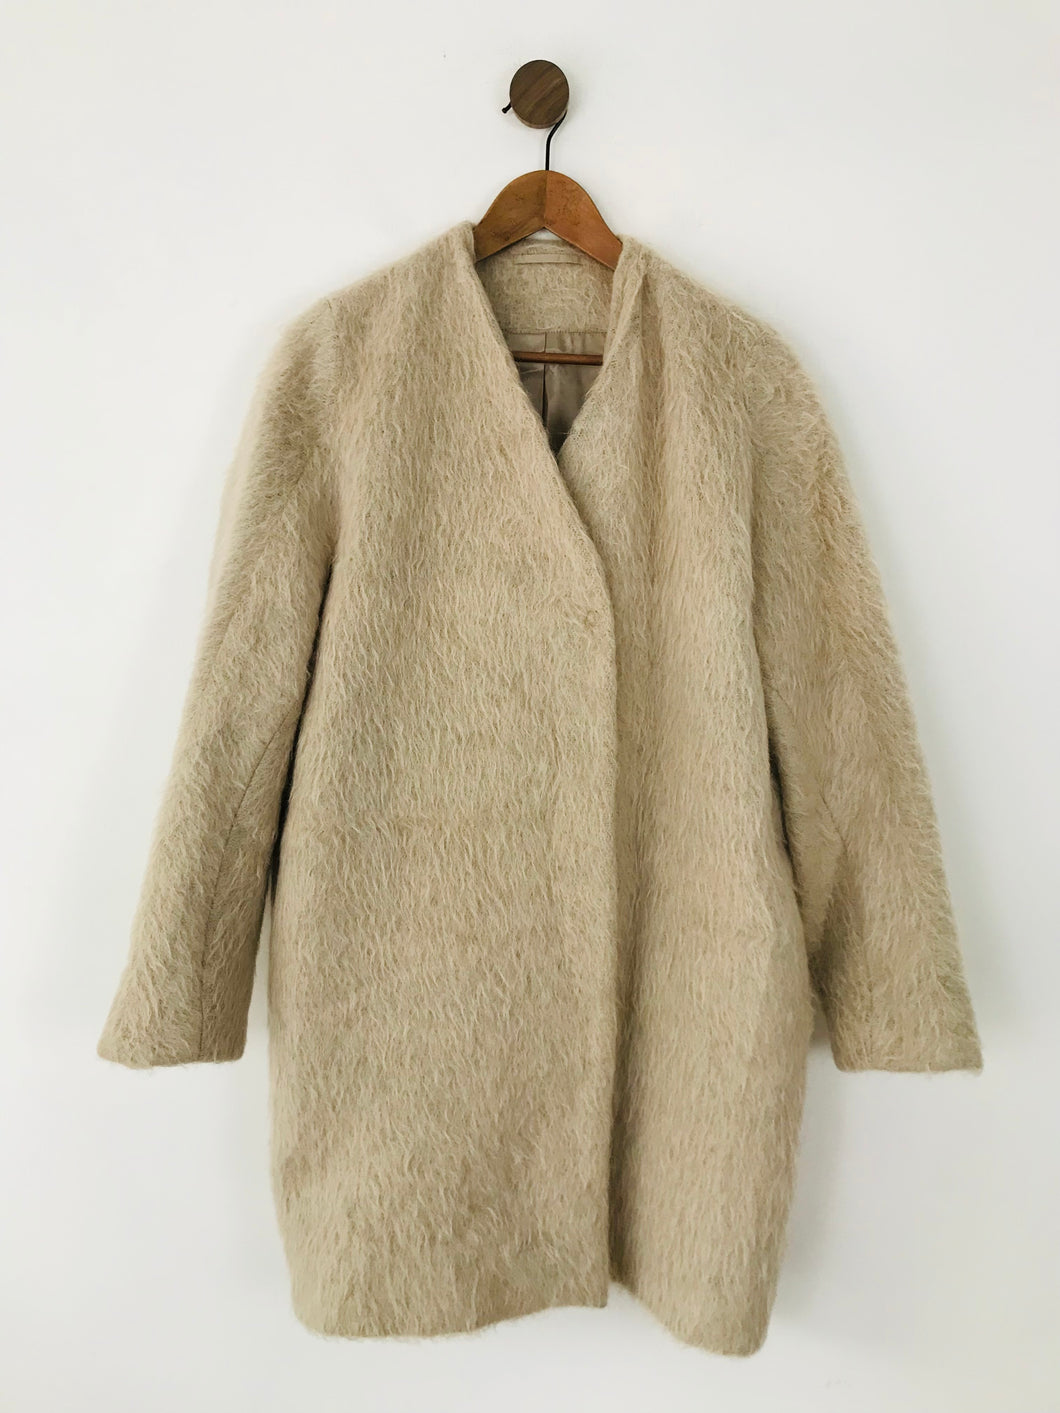 Cos Women's Faux Fur Collarless Overcoat Coat | 38 UK12 | Beige